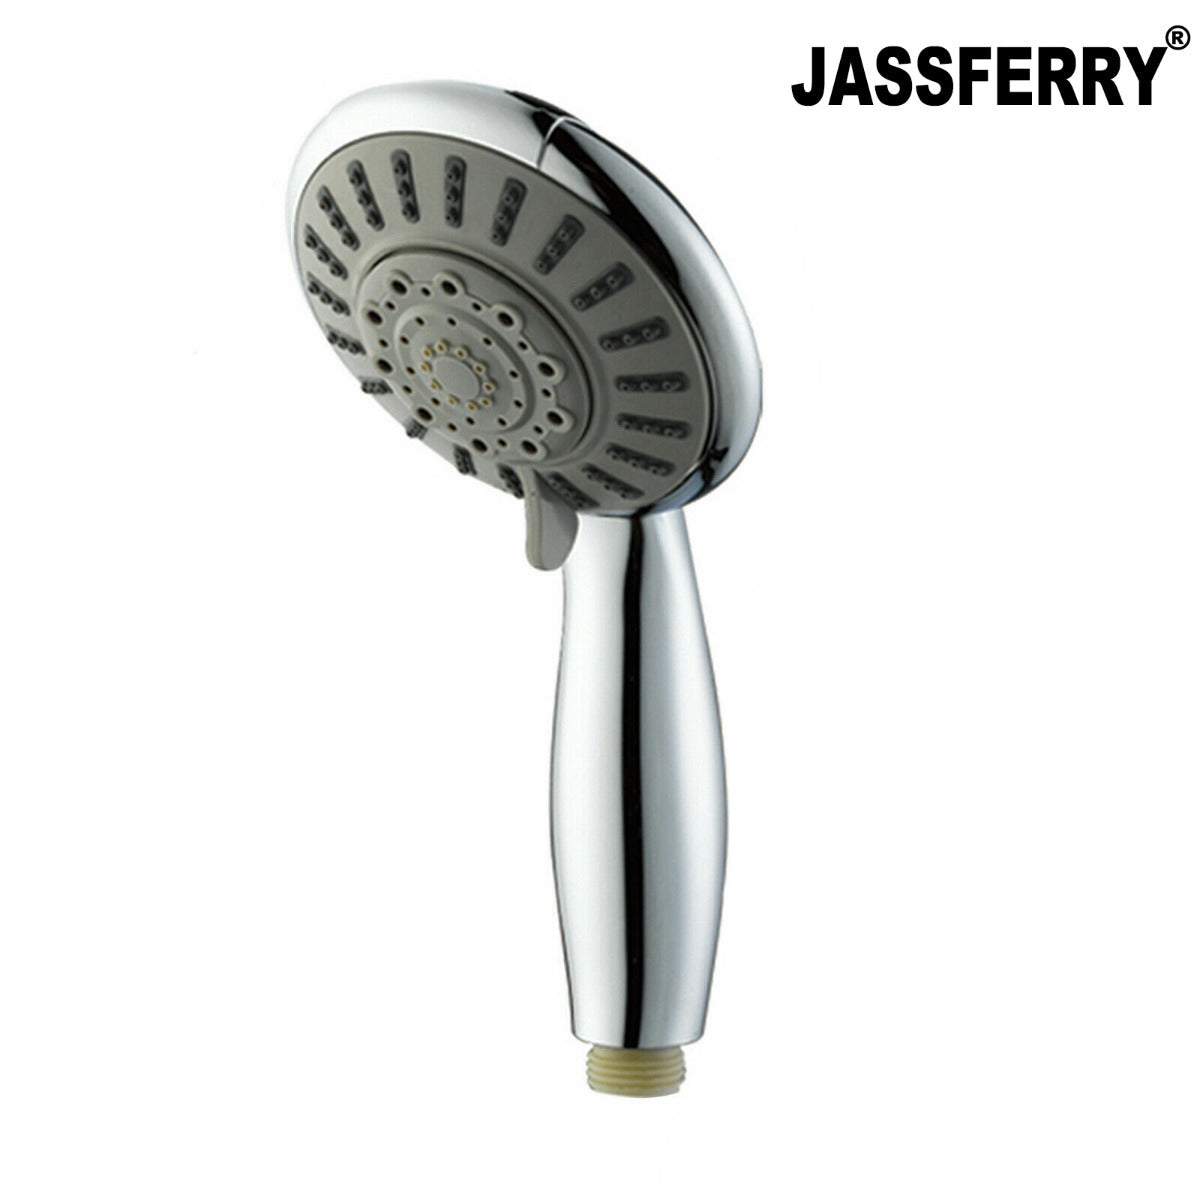 JassferryJASSFERRY 5 Mode Massage Spray Large Shower Handset 100mm Head Handheld Ideal ReplacementShower Heads